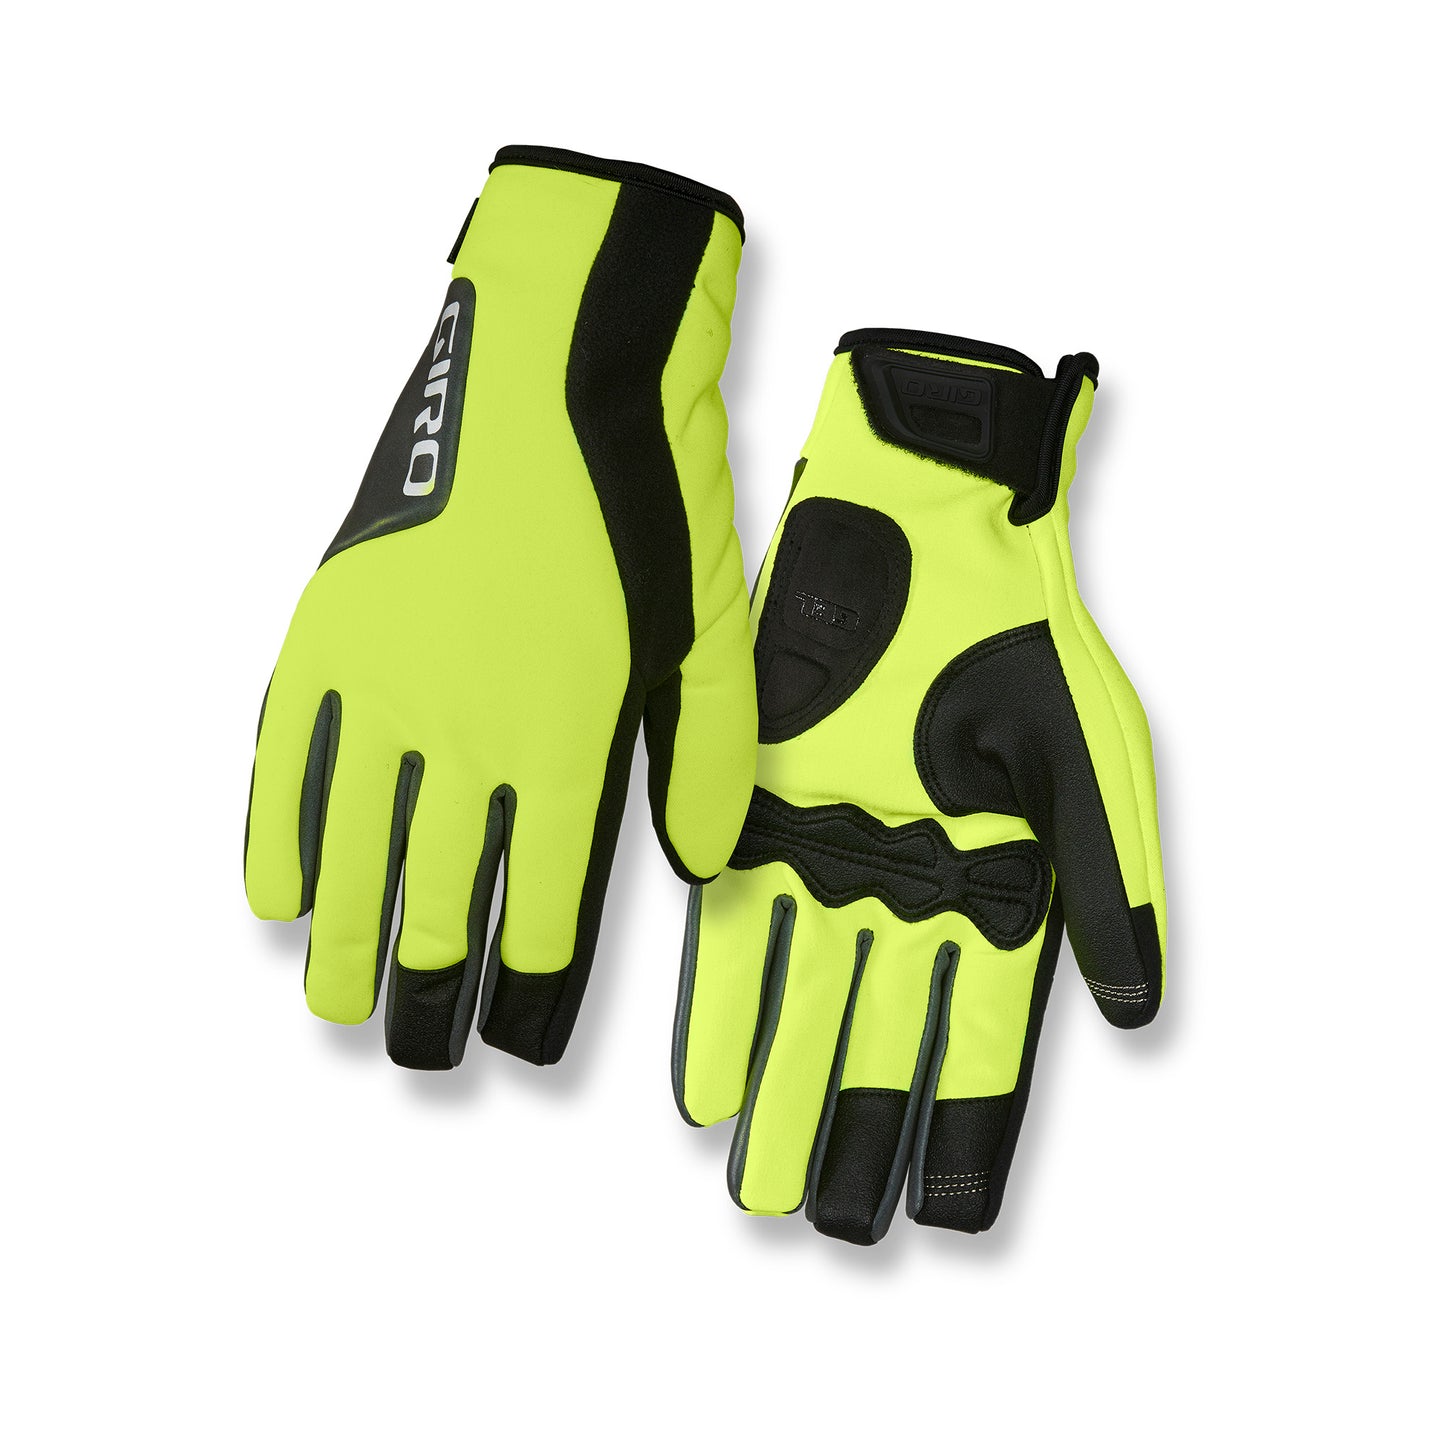 Giro Ambient 2.0 Glove Highlight Yellow/Black Bike Gloves